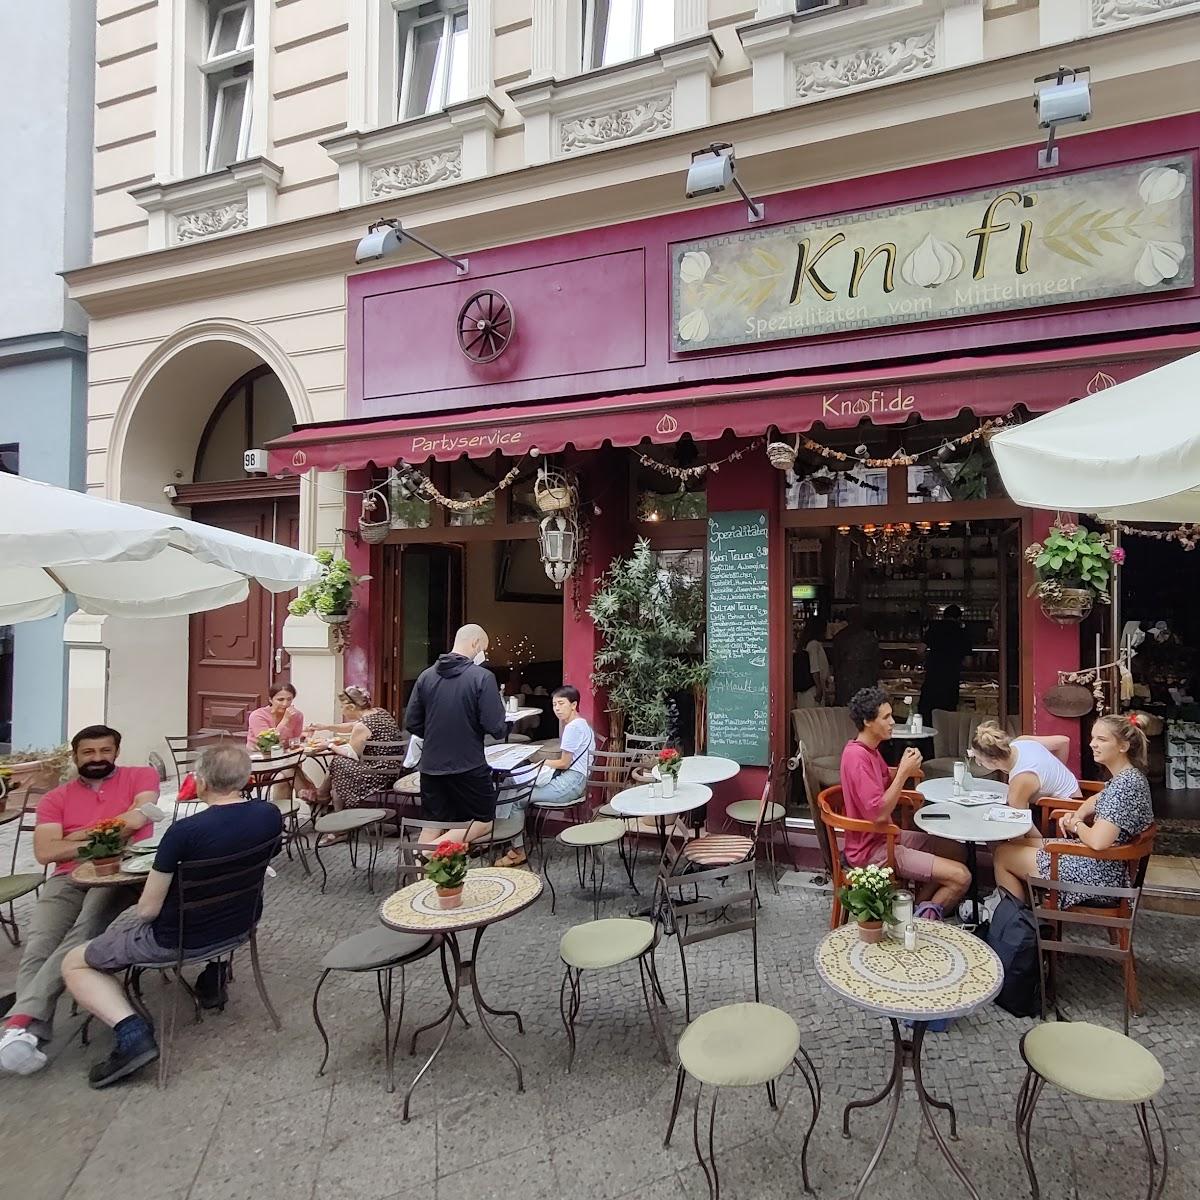 Restaurant "Knofi Feinkost" in Berlin